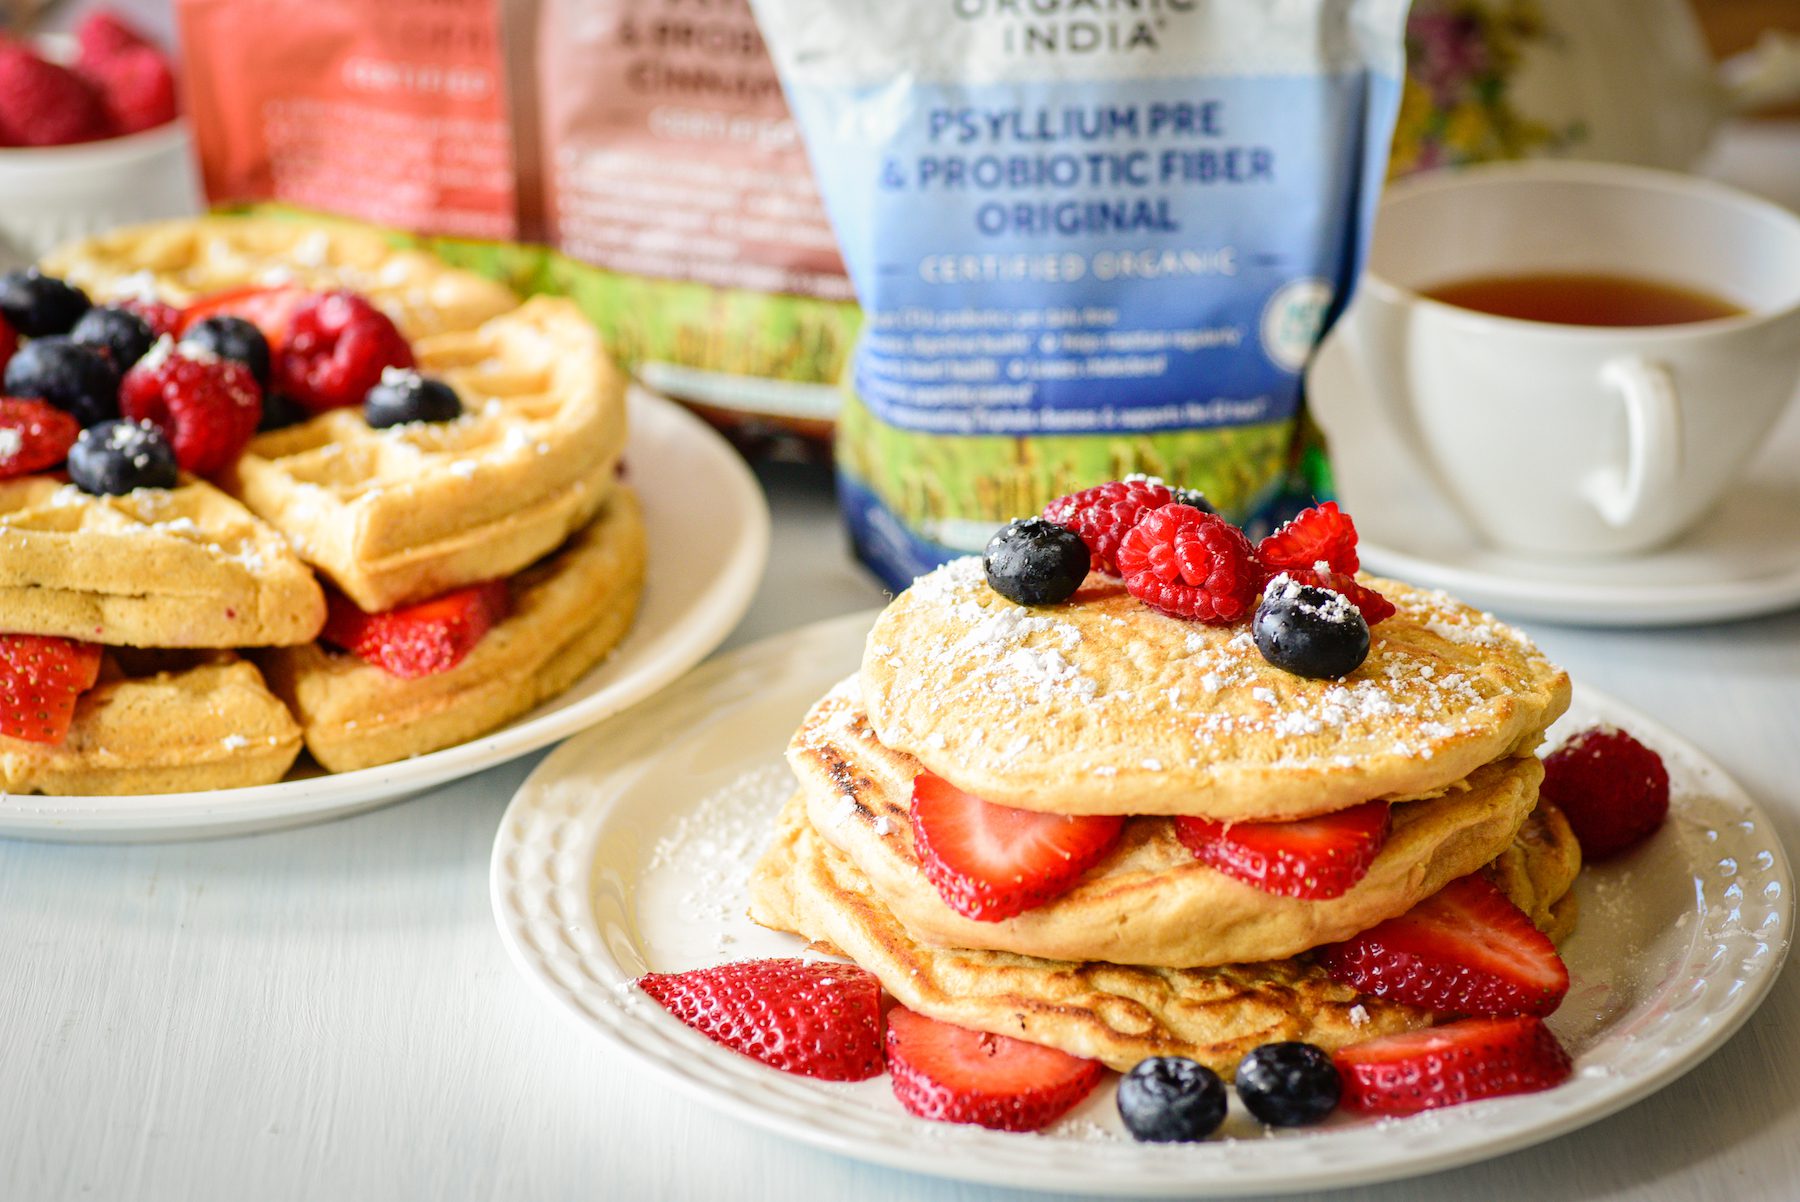 Organic India Psyllium Pancakes